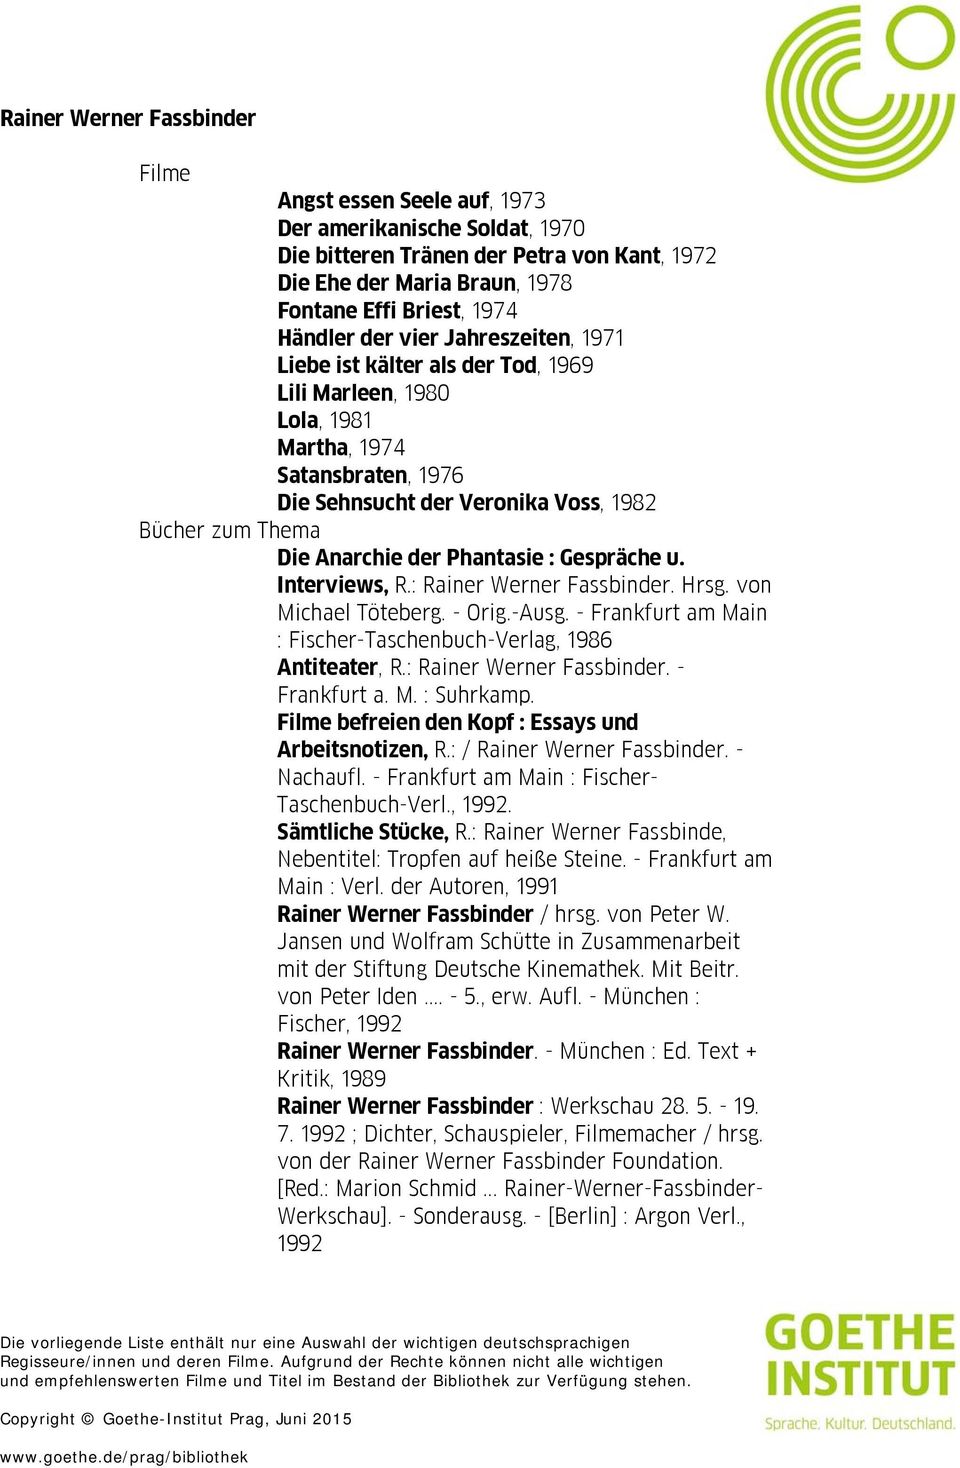 Interviews, R.: Rainer Werner Fassbinder. Hrsg. von Michael Töteberg. - Orig.-Ausg. - Frankfurt am Main : Fischer-Taschenbuch-Verlag, 1986 Antiteater, R.: Rainer Werner Fassbinder. - Frankfurt a. M. : Suhrkamp.